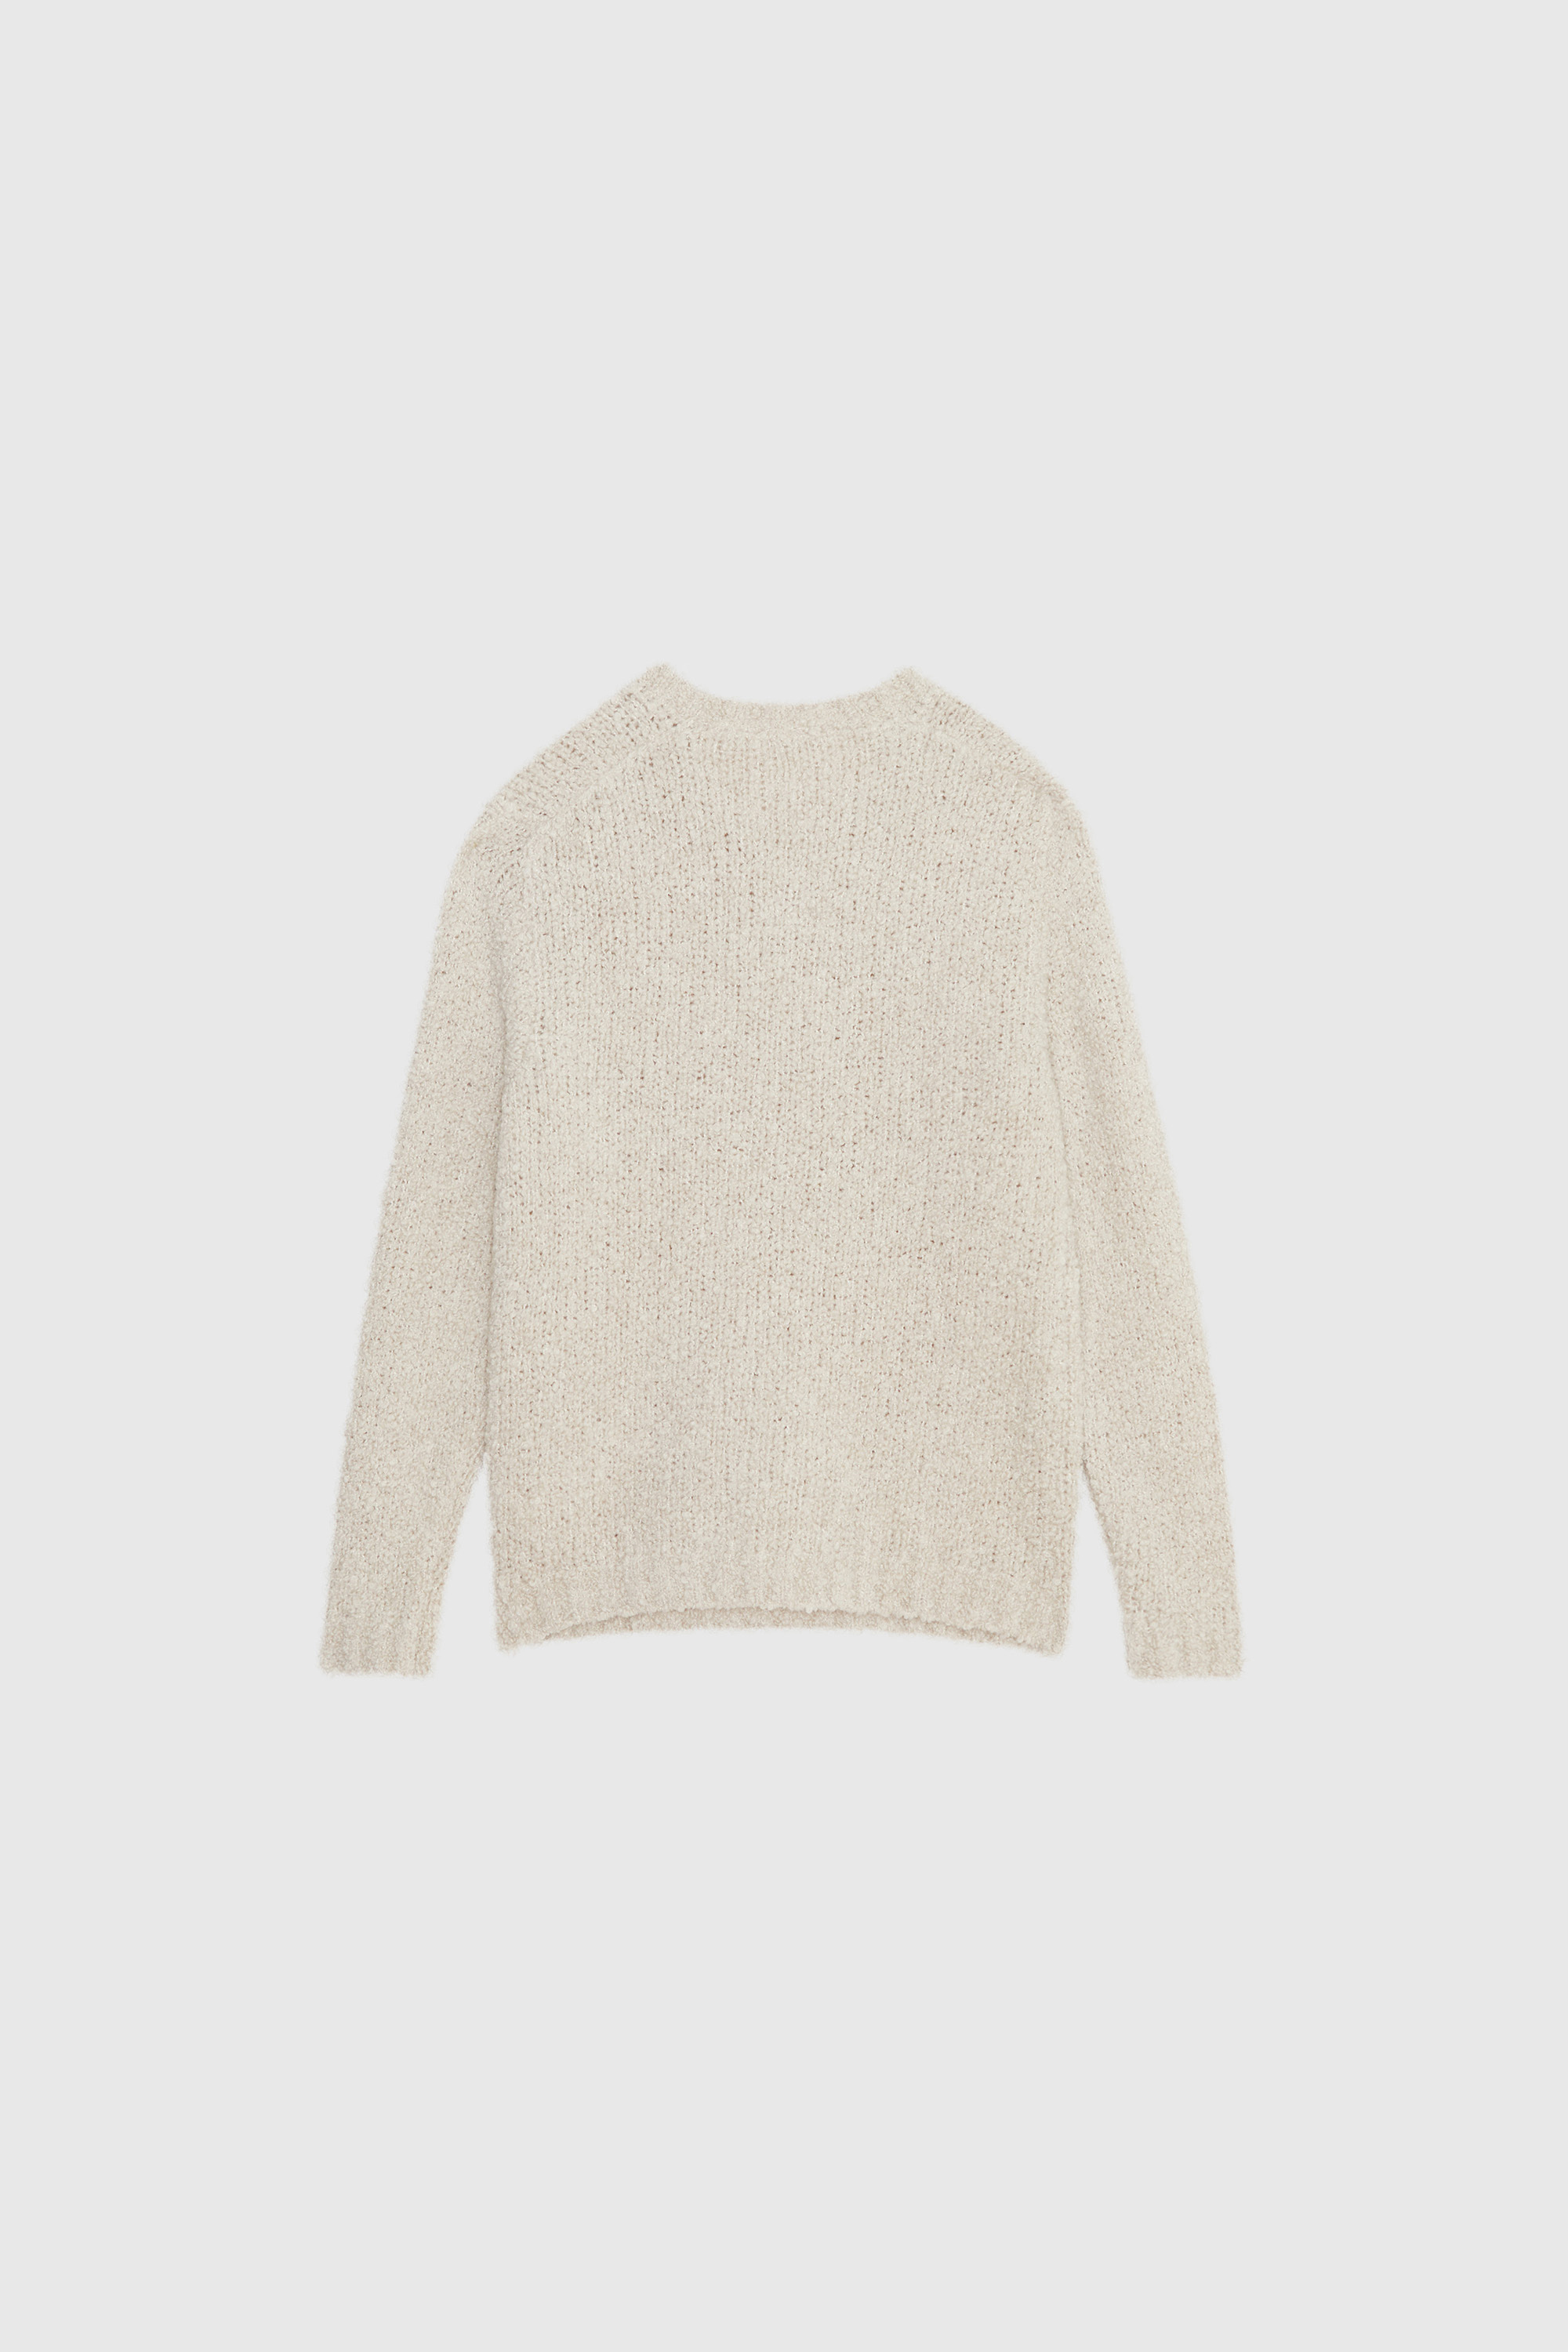 Aske Sweater